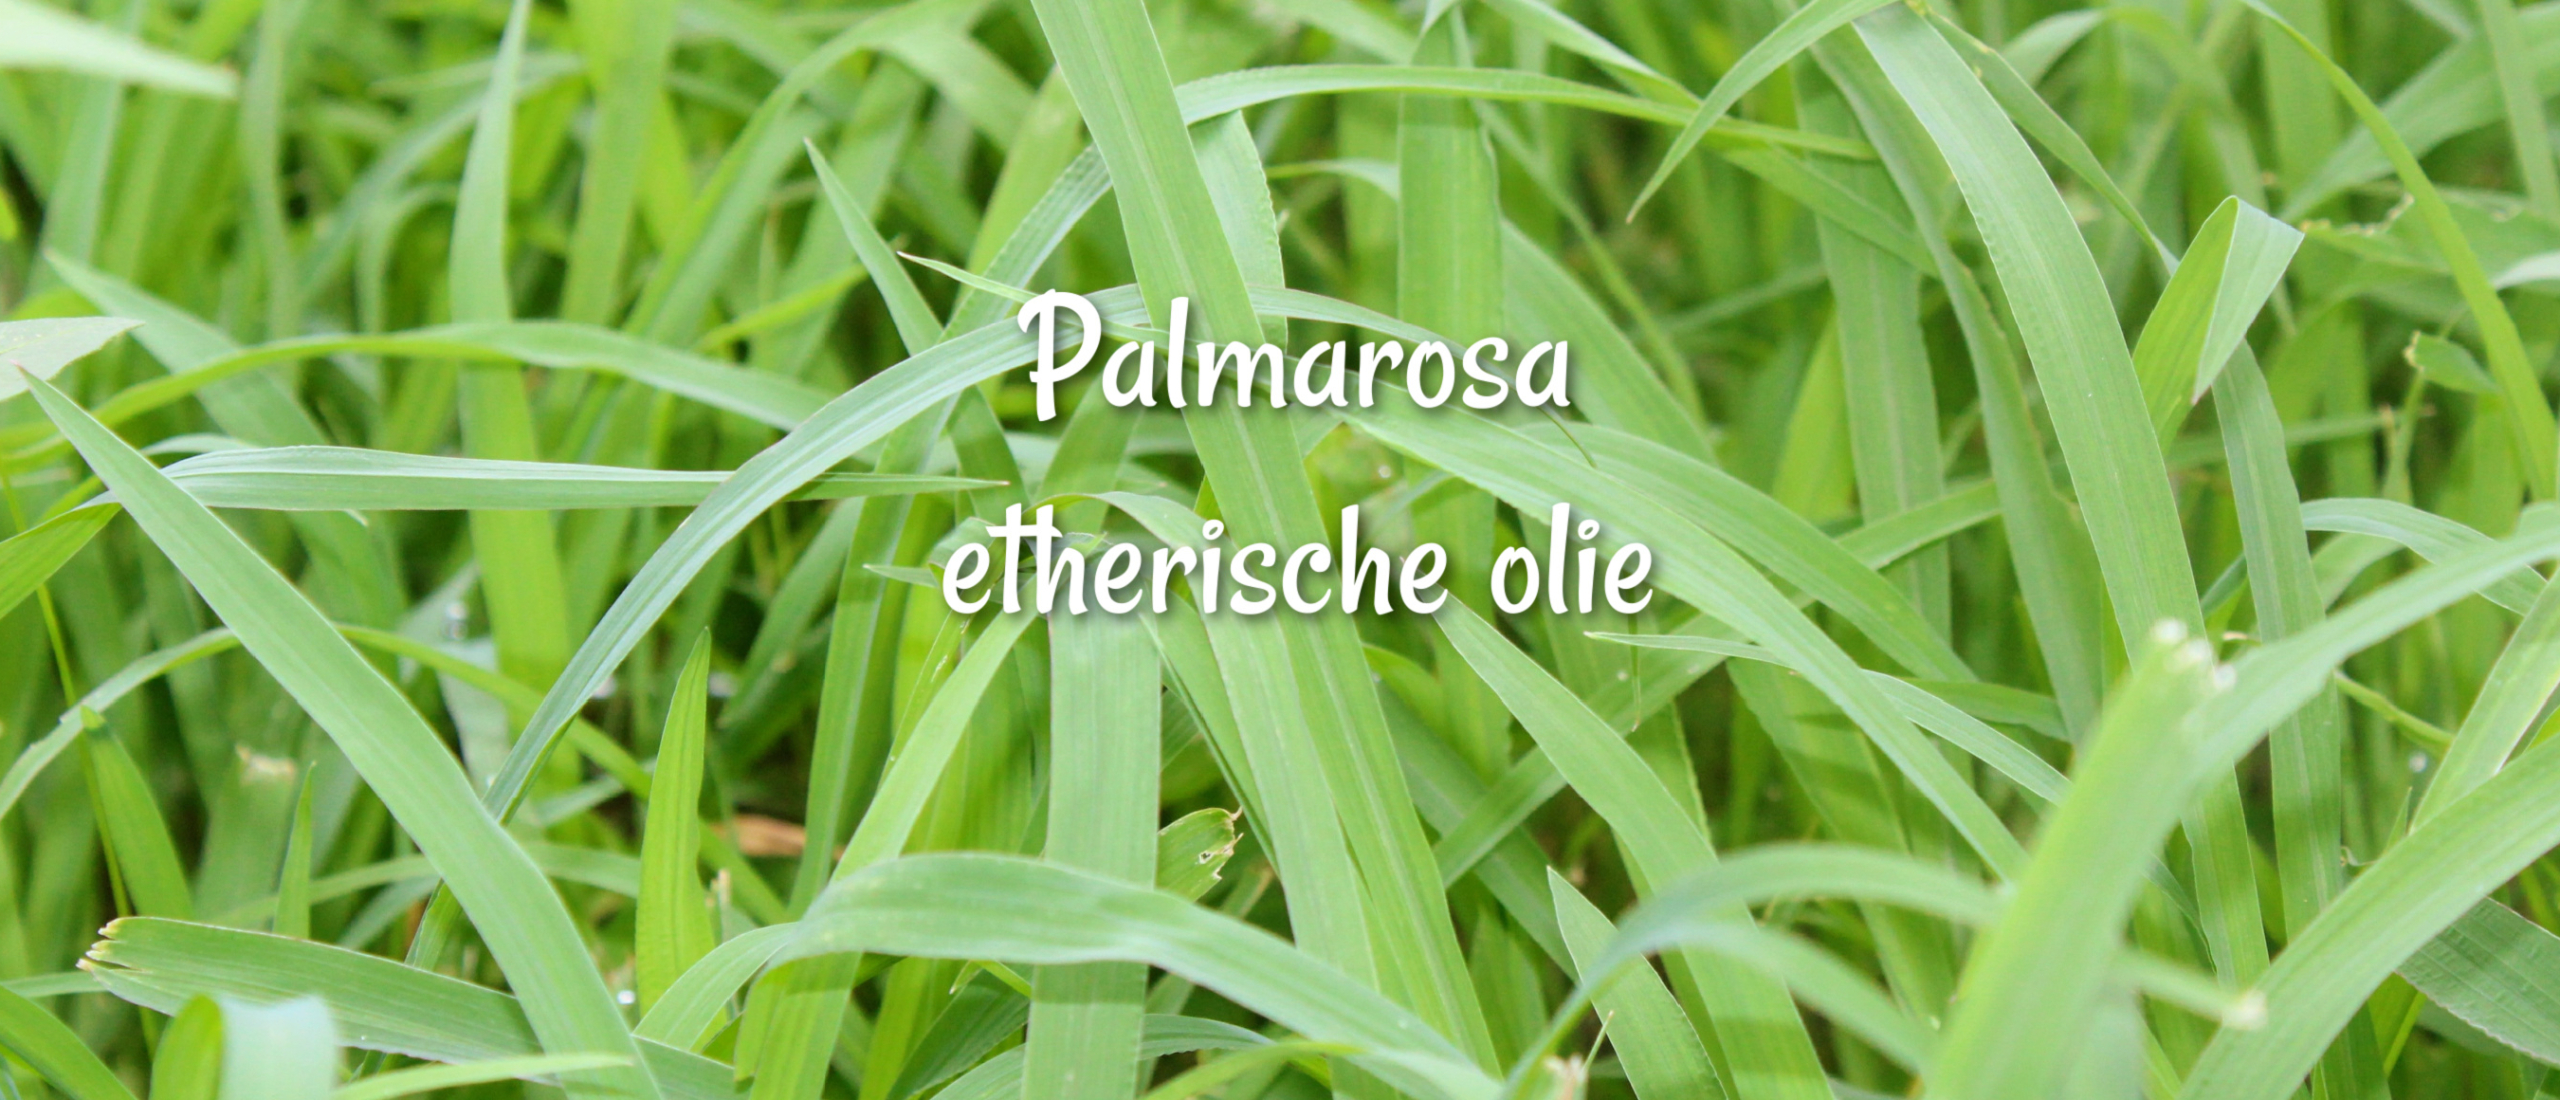 palmarosa etherische olie